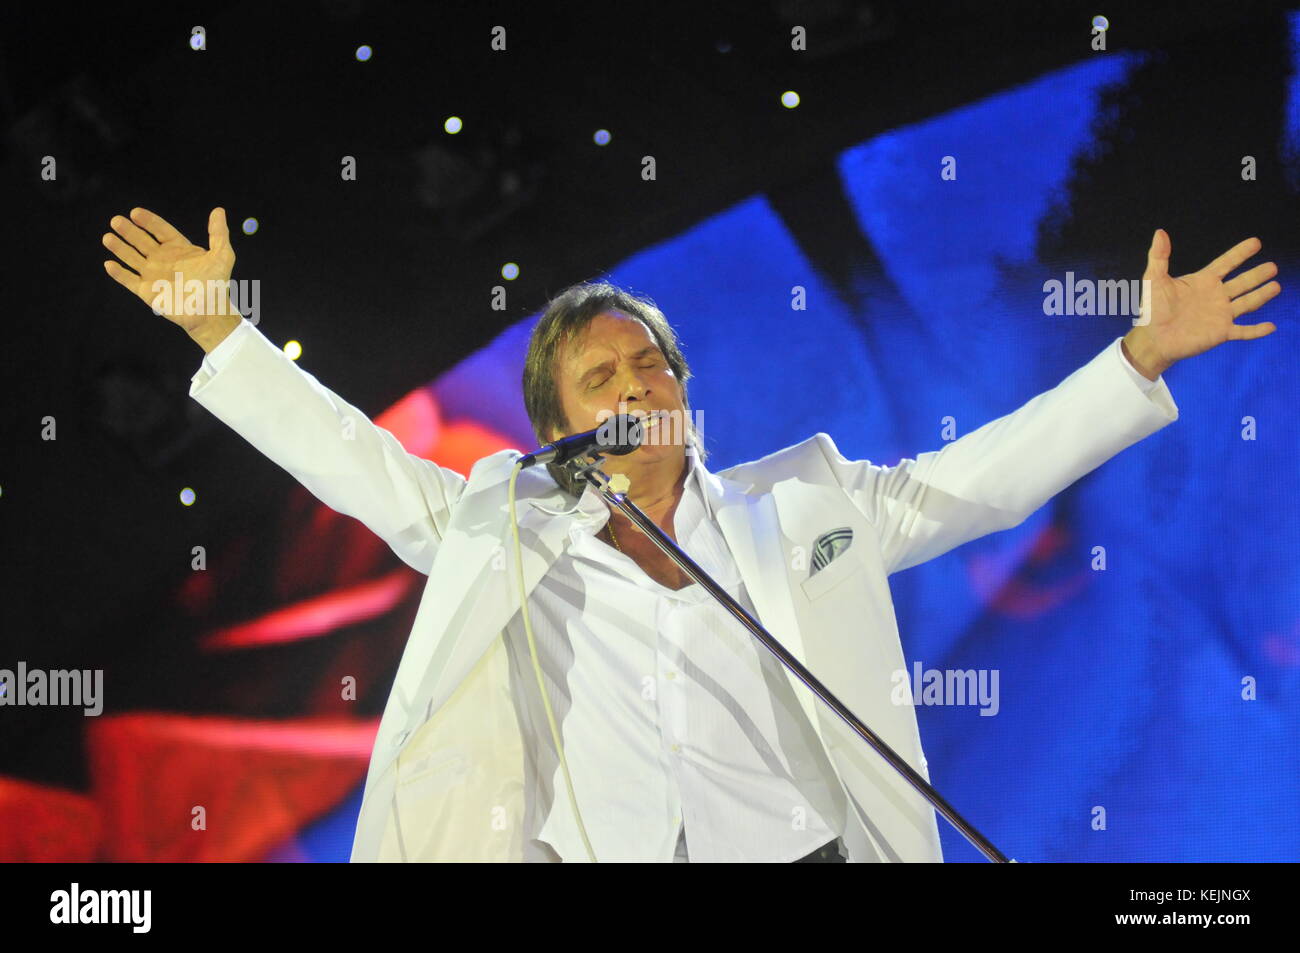 Rio de Janeiro-Brazil, 20 décembre 2013 concert ROBERTO CARLOS (célèbre chanteur brésilien) à l'HSBC Arena de Rio de Janeiro Banque D'Images